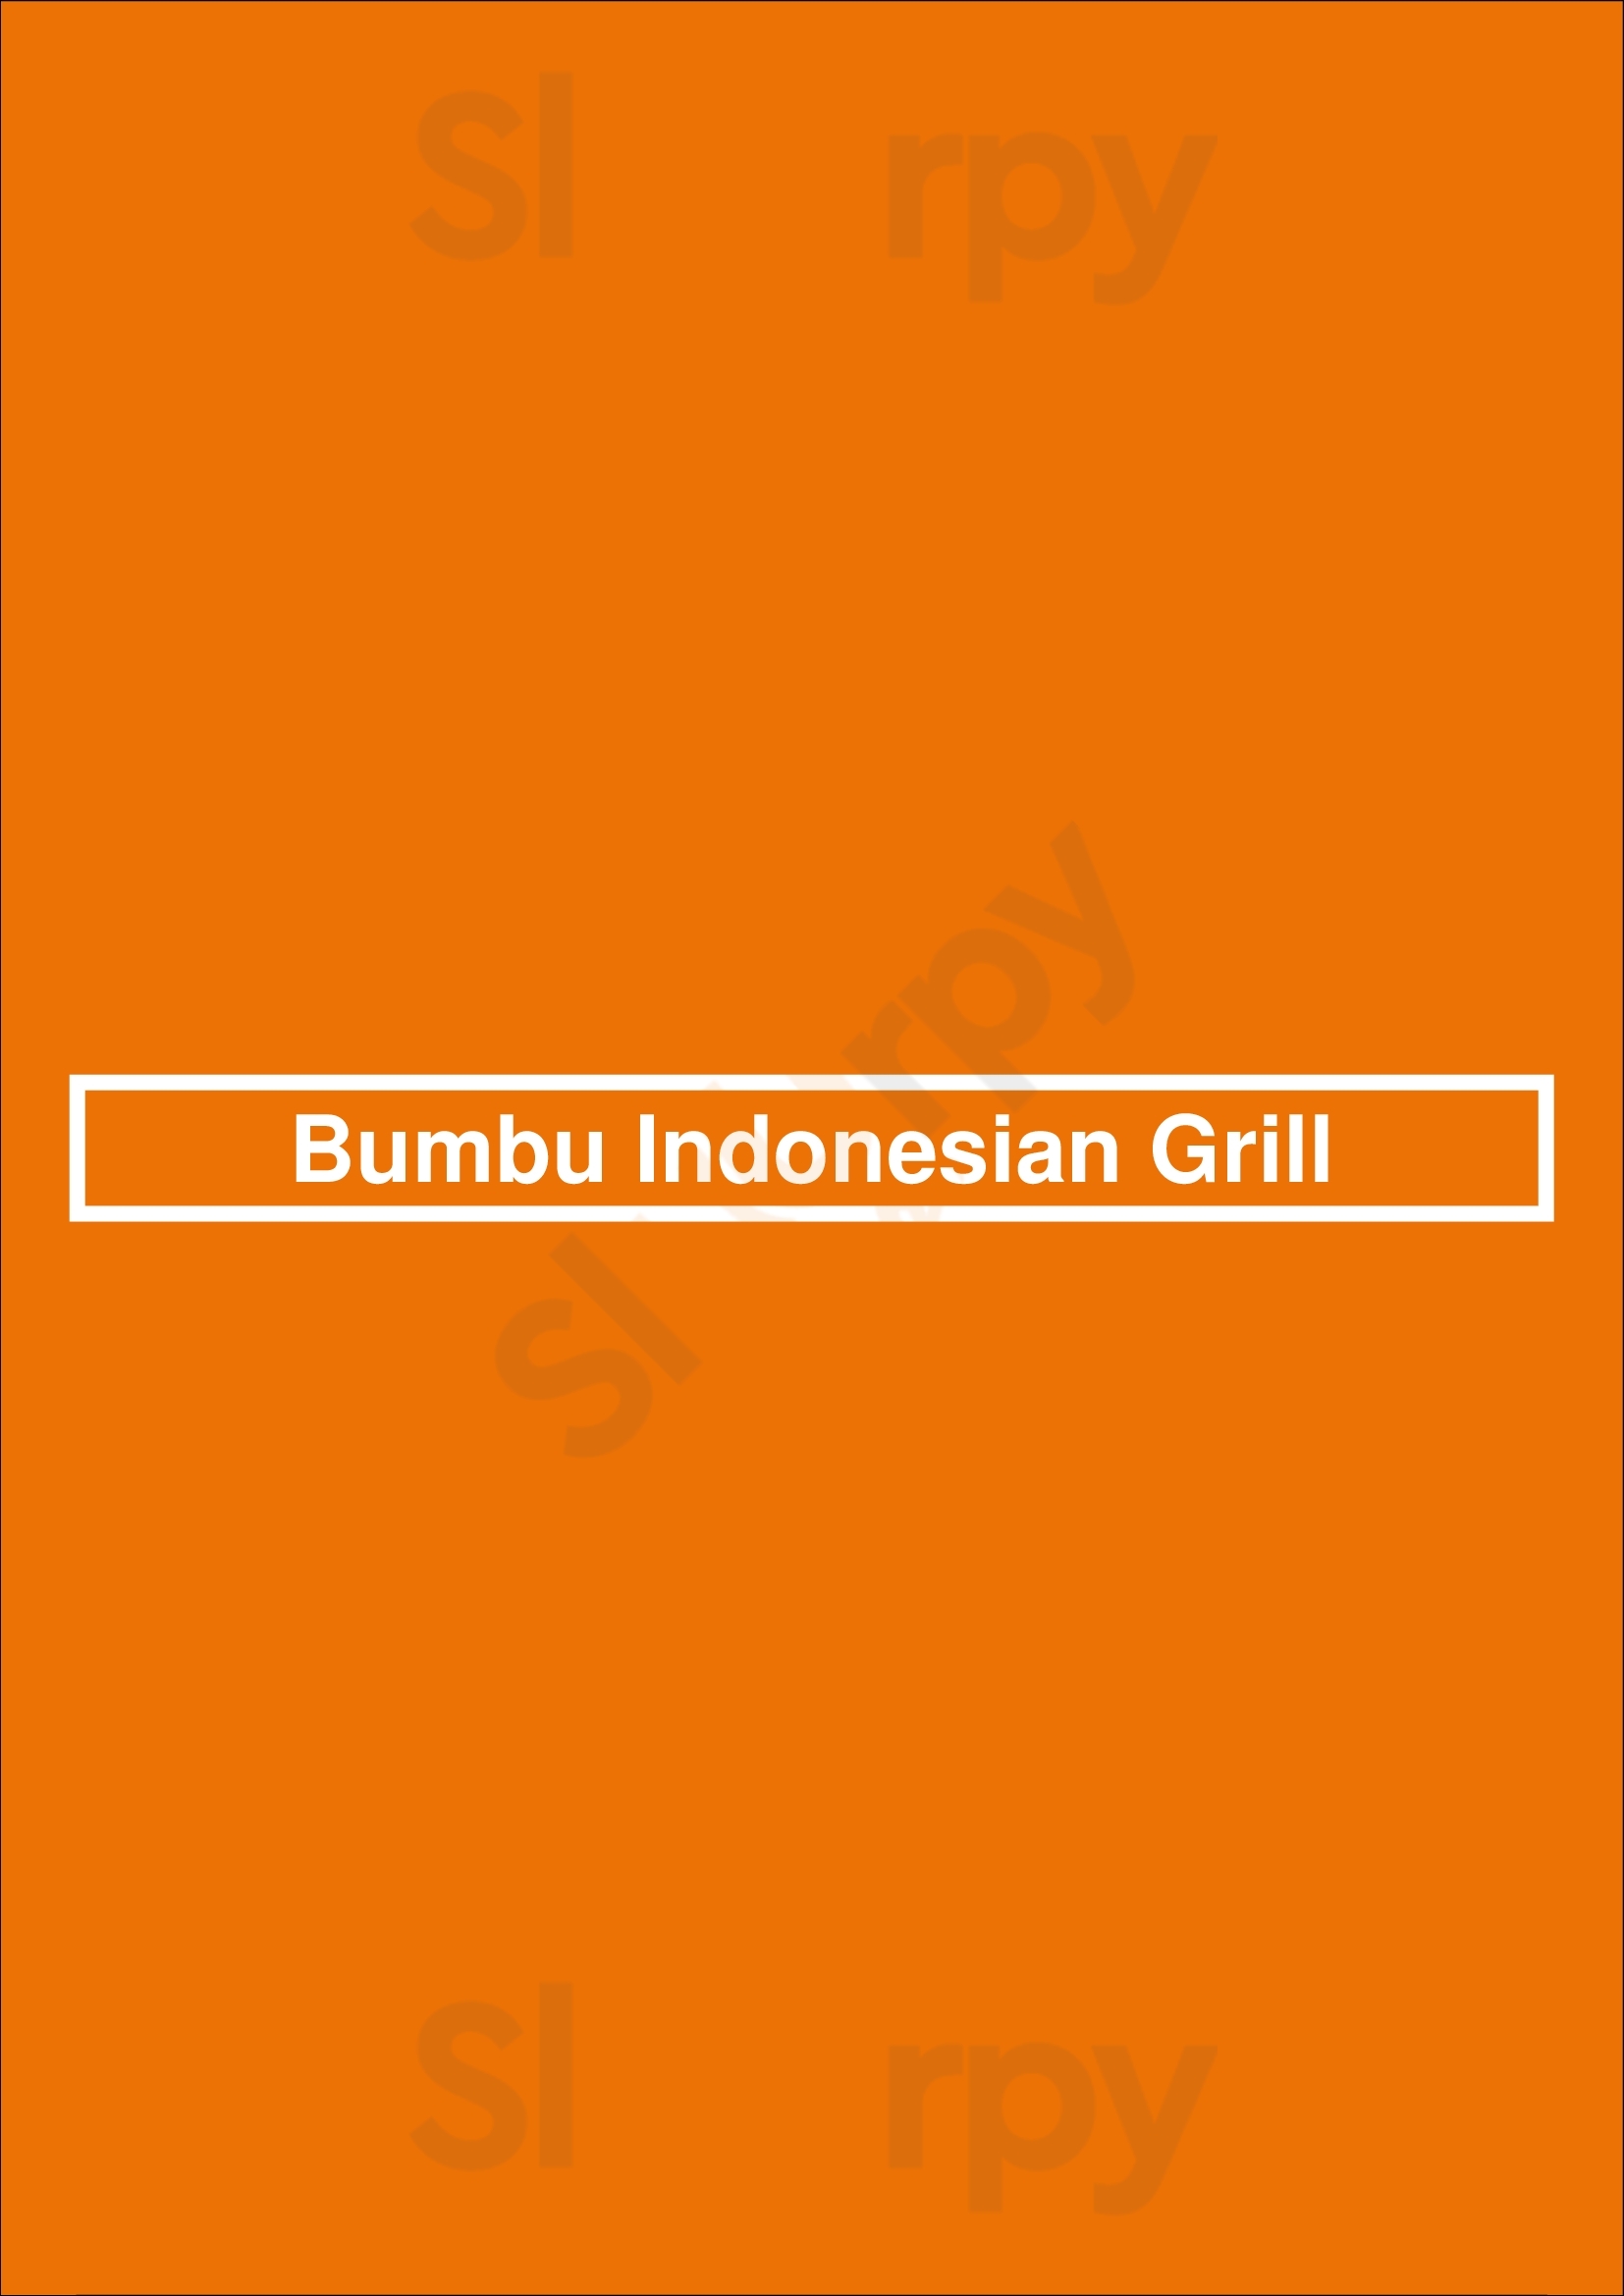 Bumbu Indonesian Grill Calgary Menu - 1